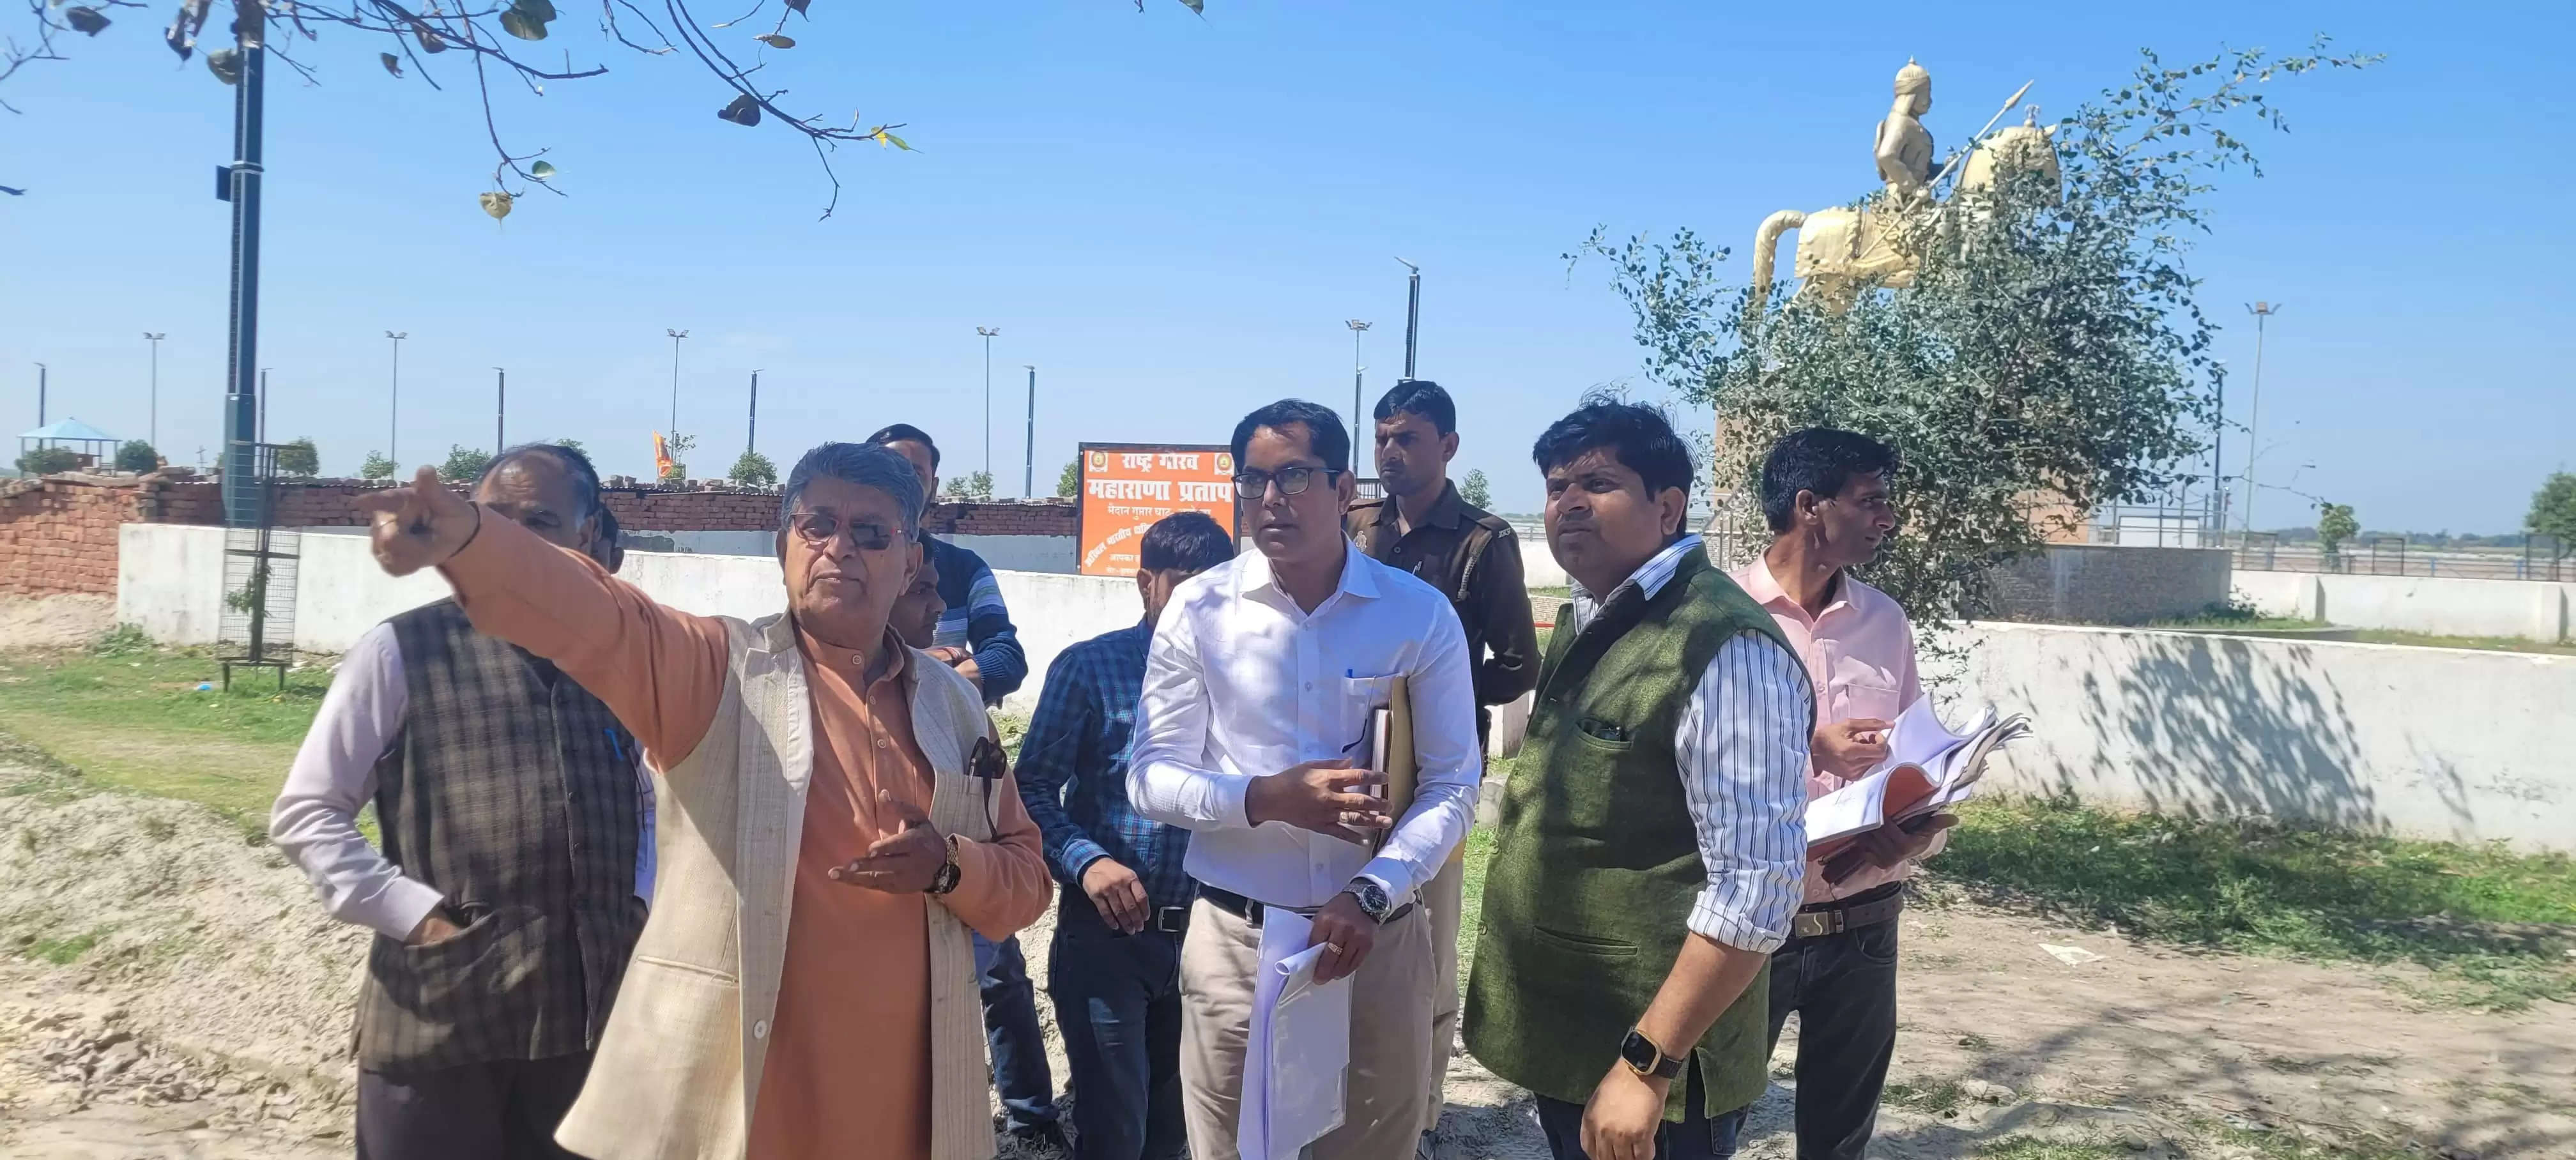  Ayodhya News: विधायक अयोध्या ने गुप्तार घाट पर चल रहे निर्माण कार्यों का किया निरीक्षण